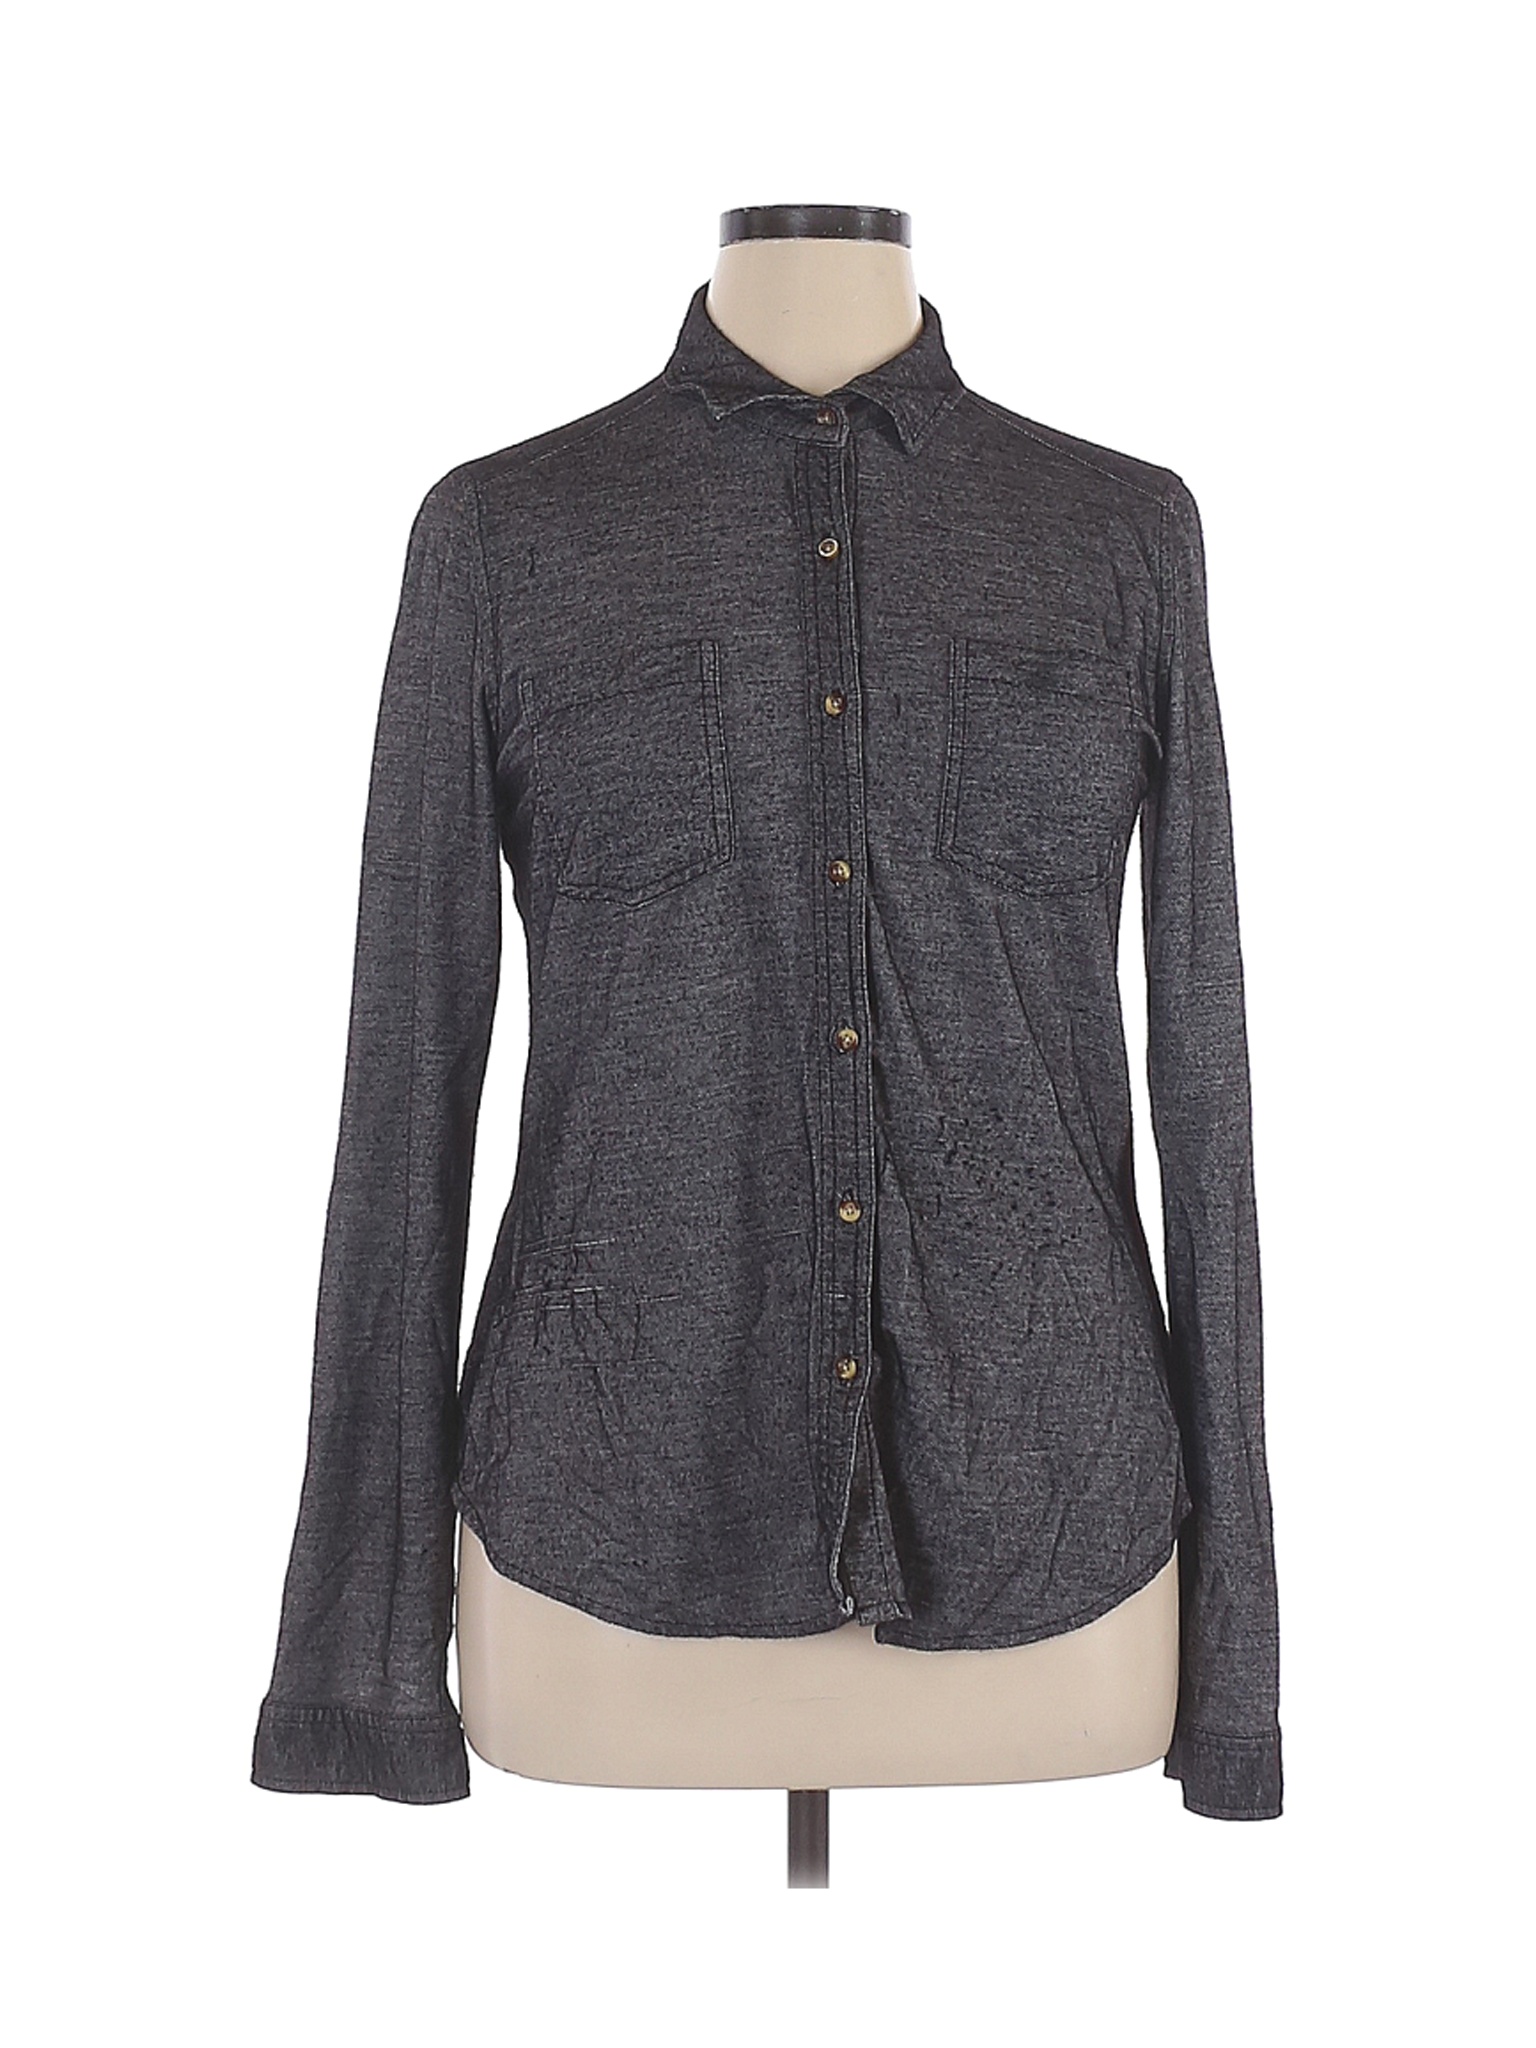 Passport Women Gray Long Sleeve Button-Down Shirt XL | eBay